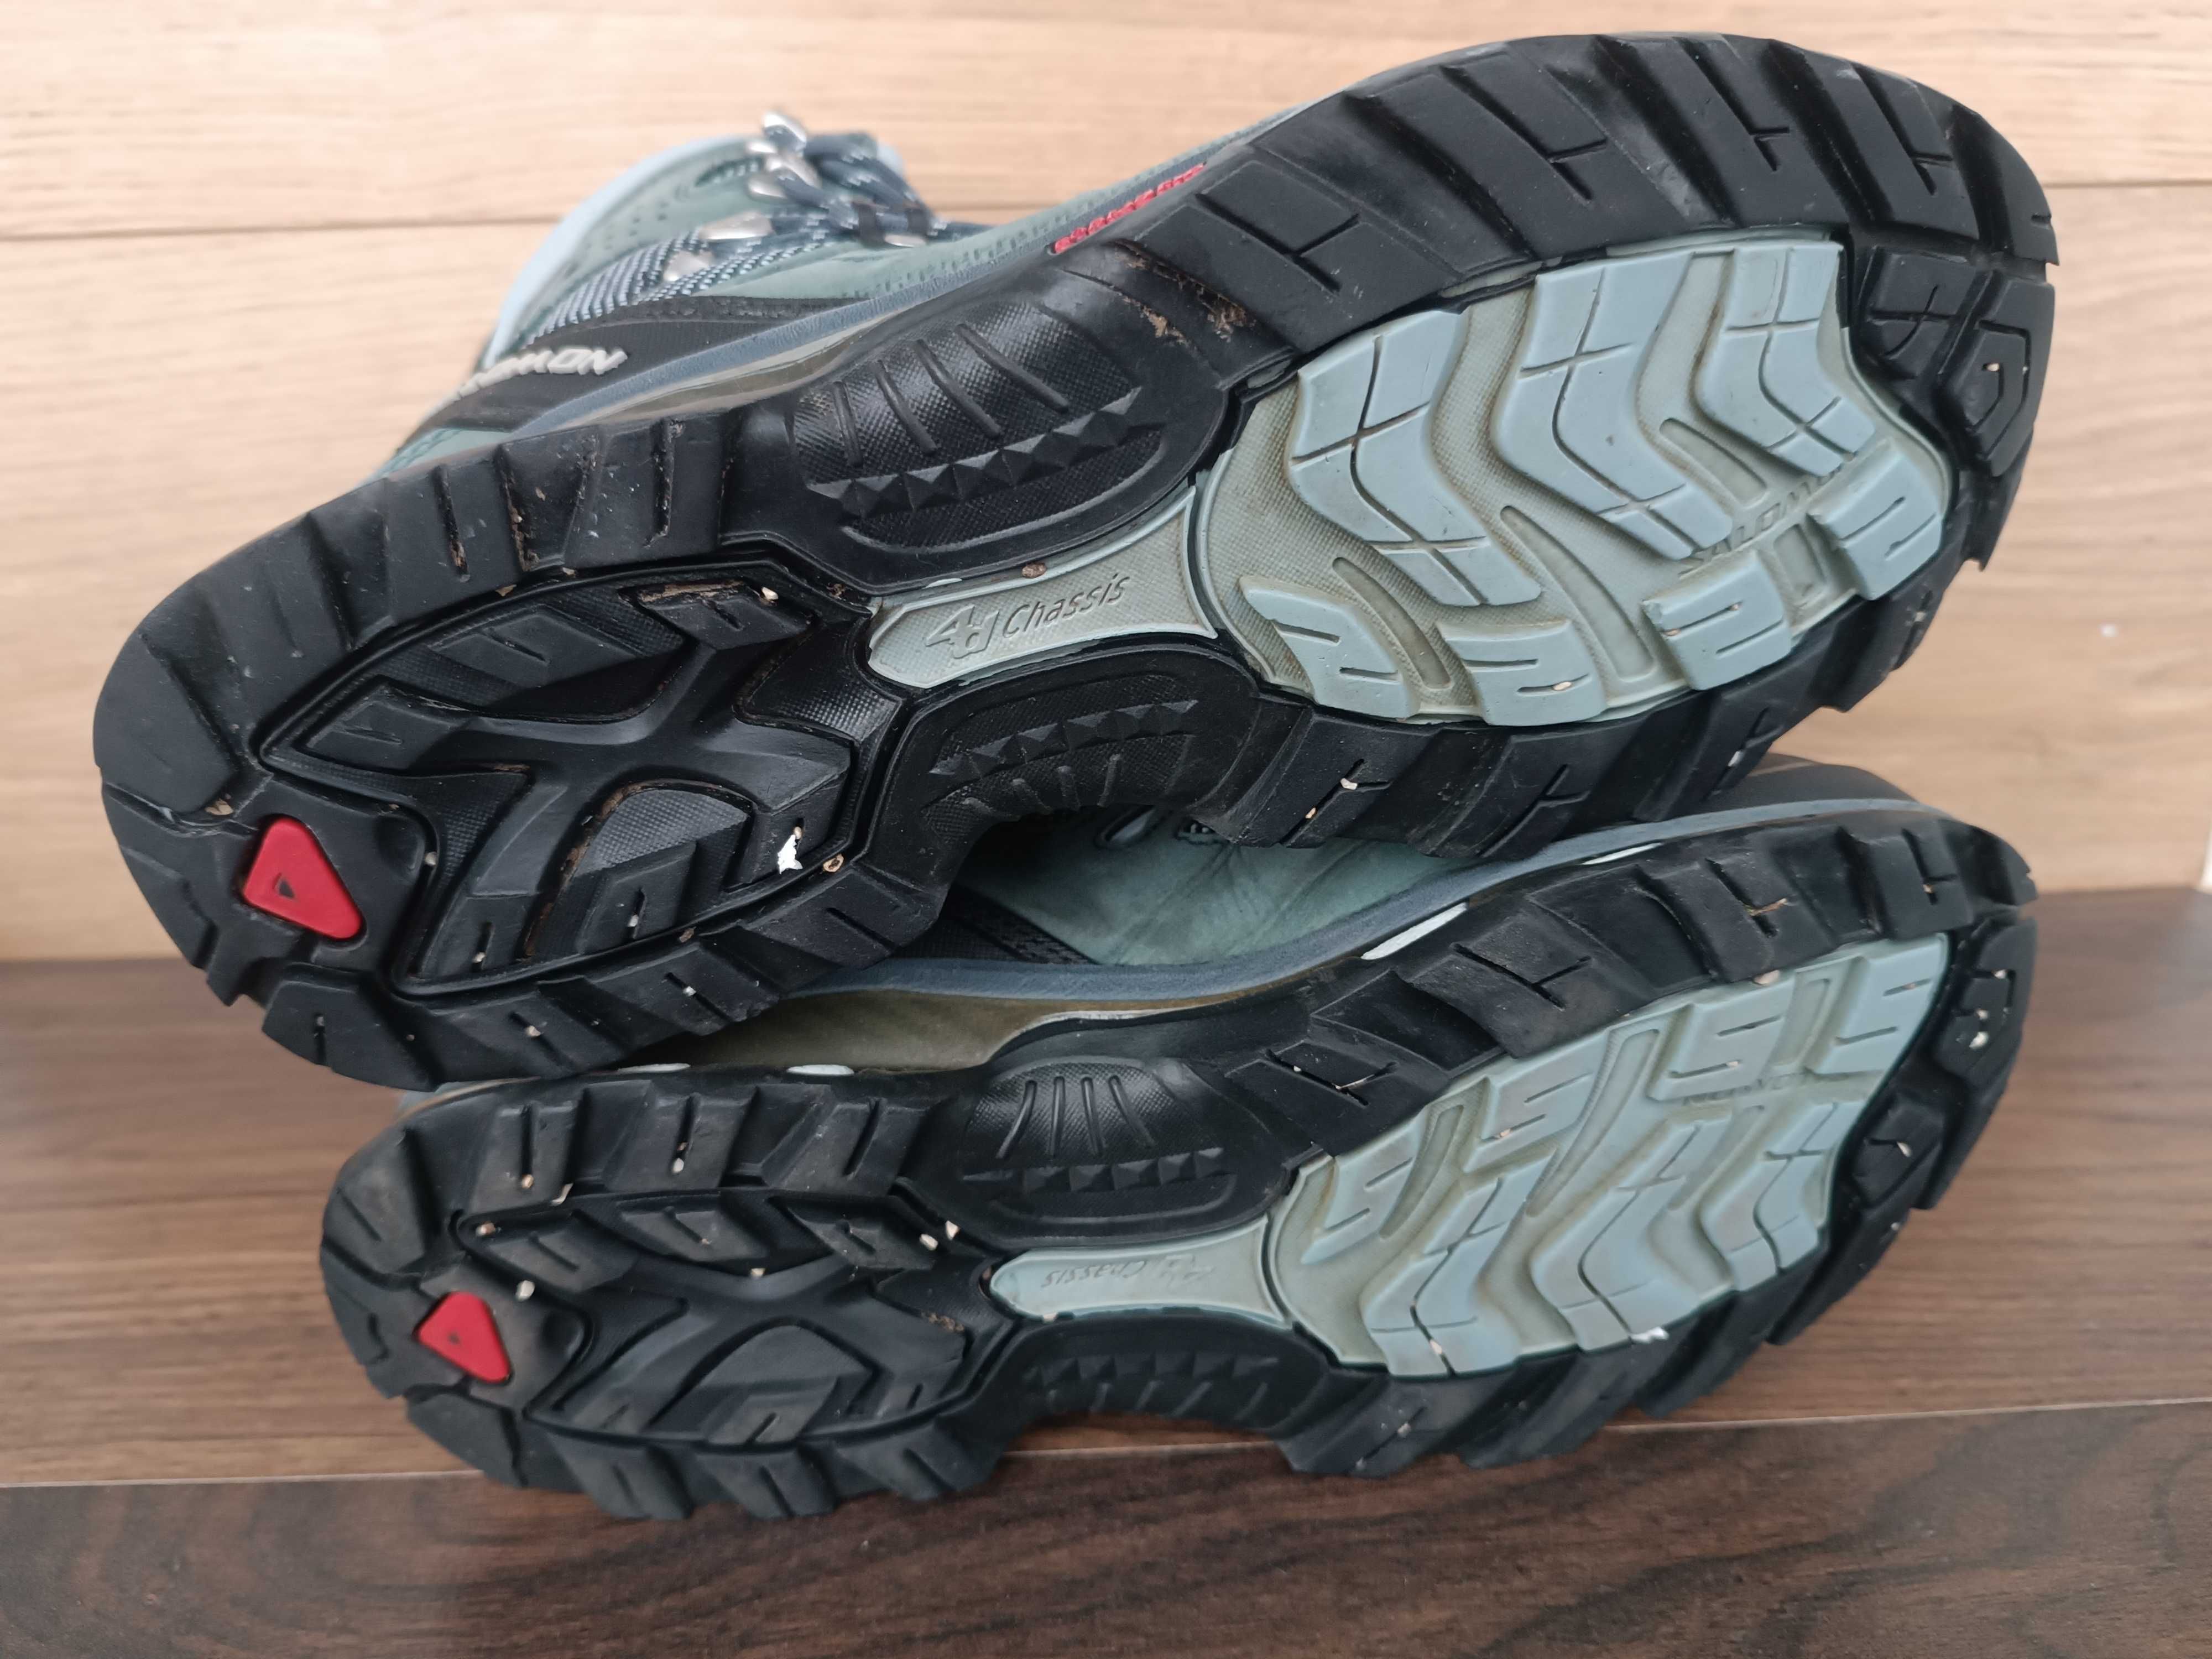 Ботинки Salomon Quest 4 D GTX goreTex кожа берцы 41.5 26 26.5 см